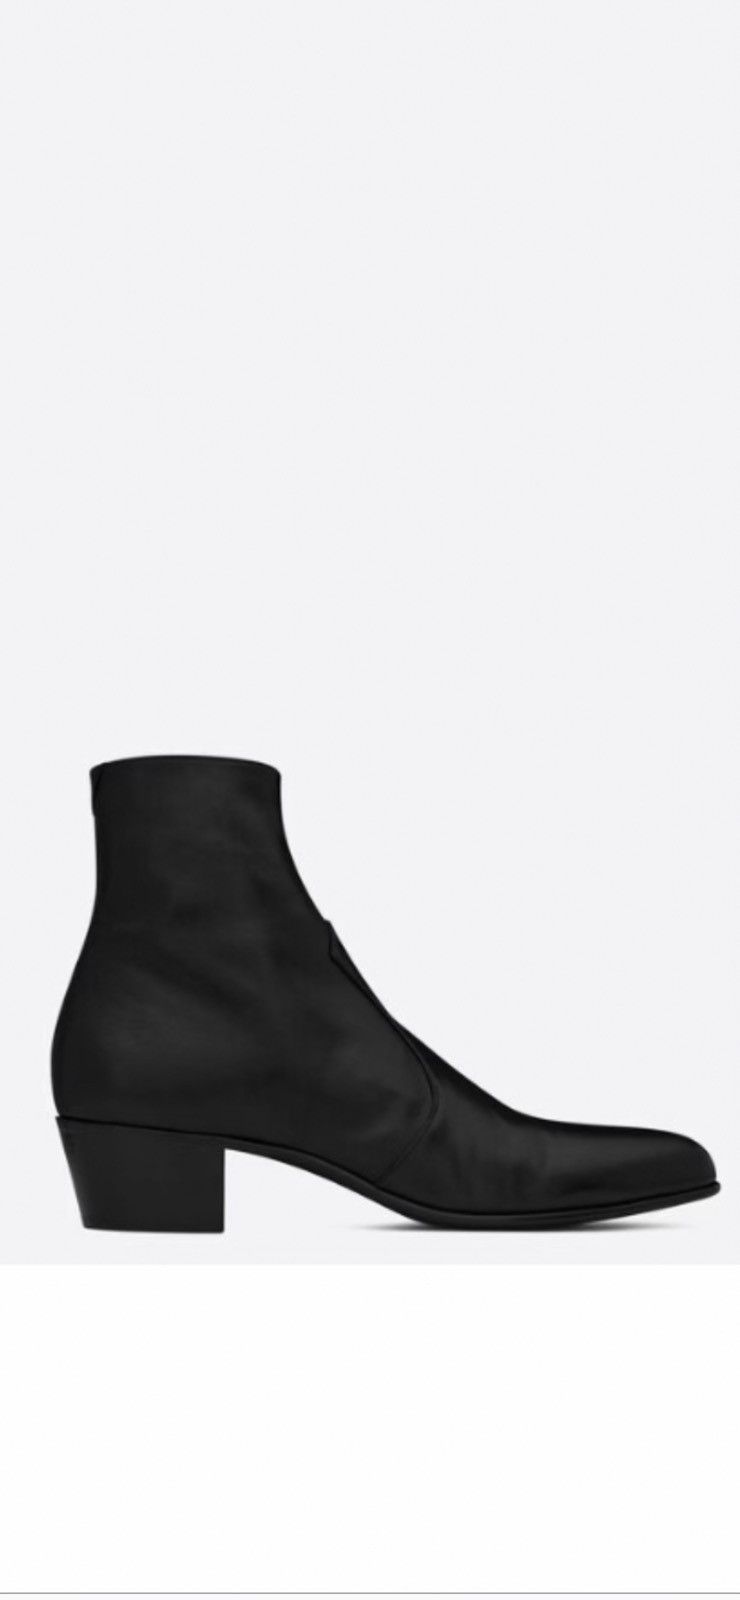 Saint Laurent Paris Saint Laurent joey boots. 42/9. $1290 | Grailed